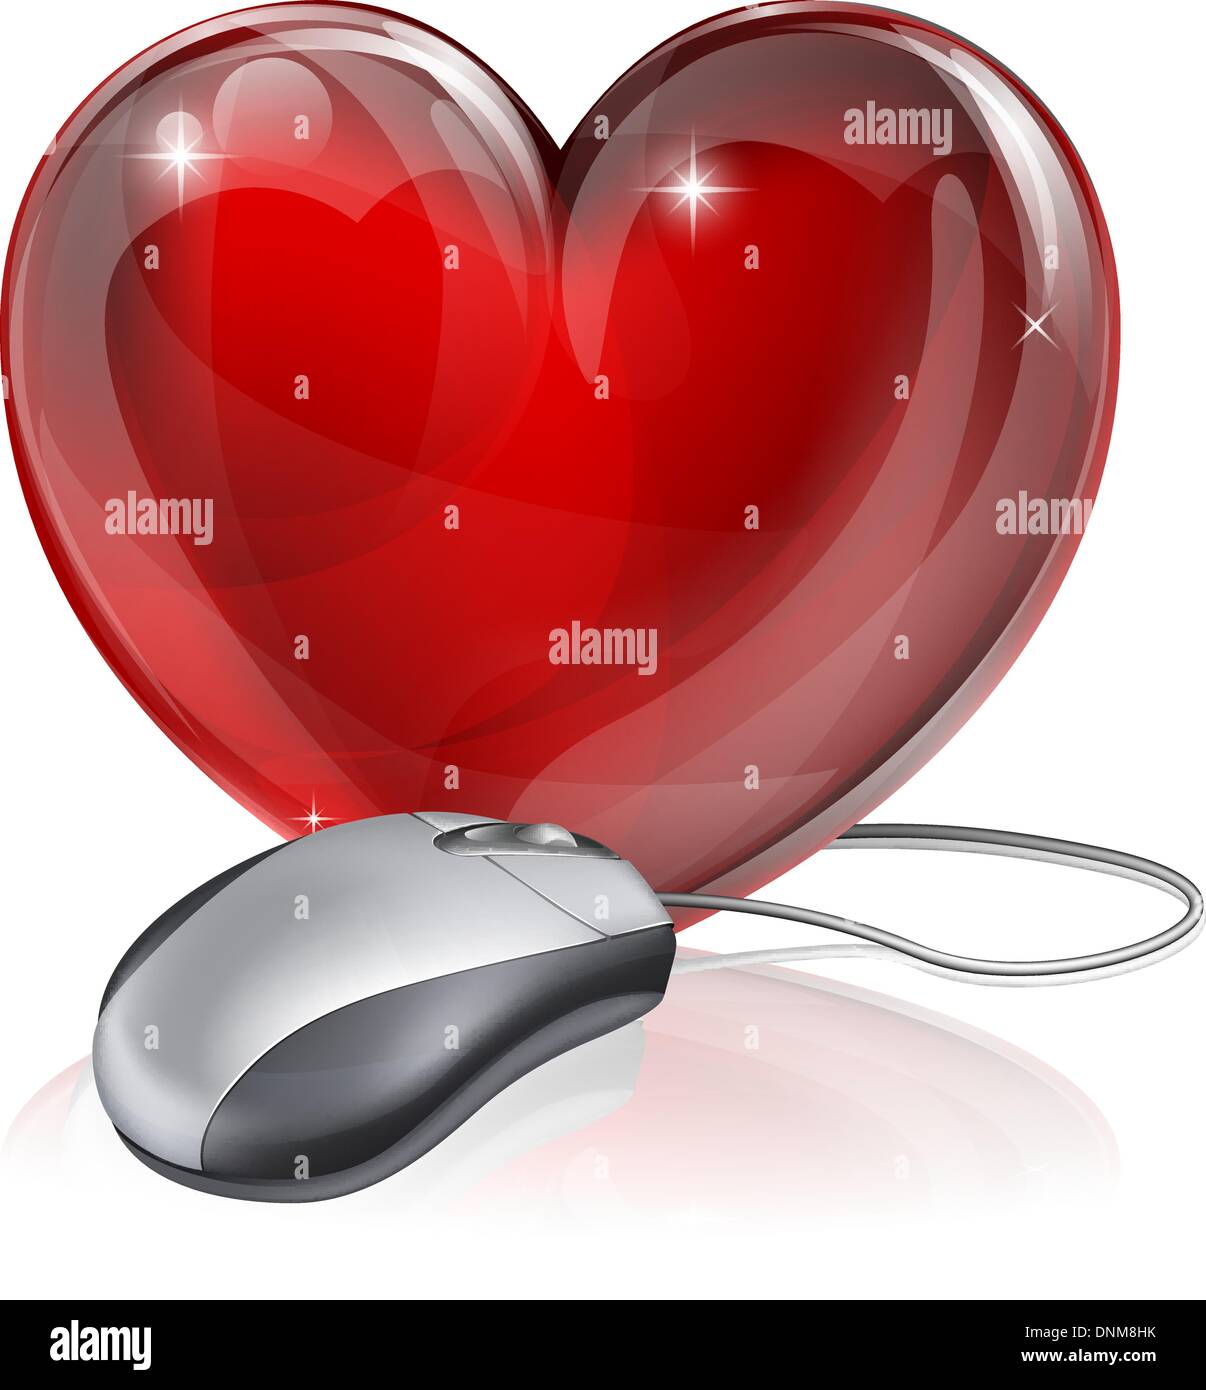 Illustrazione di un mouse per computer collegato ad un cuore rosso simbolo, il concetto di online dating, romanticismo o simile Illustrazione Vettoriale